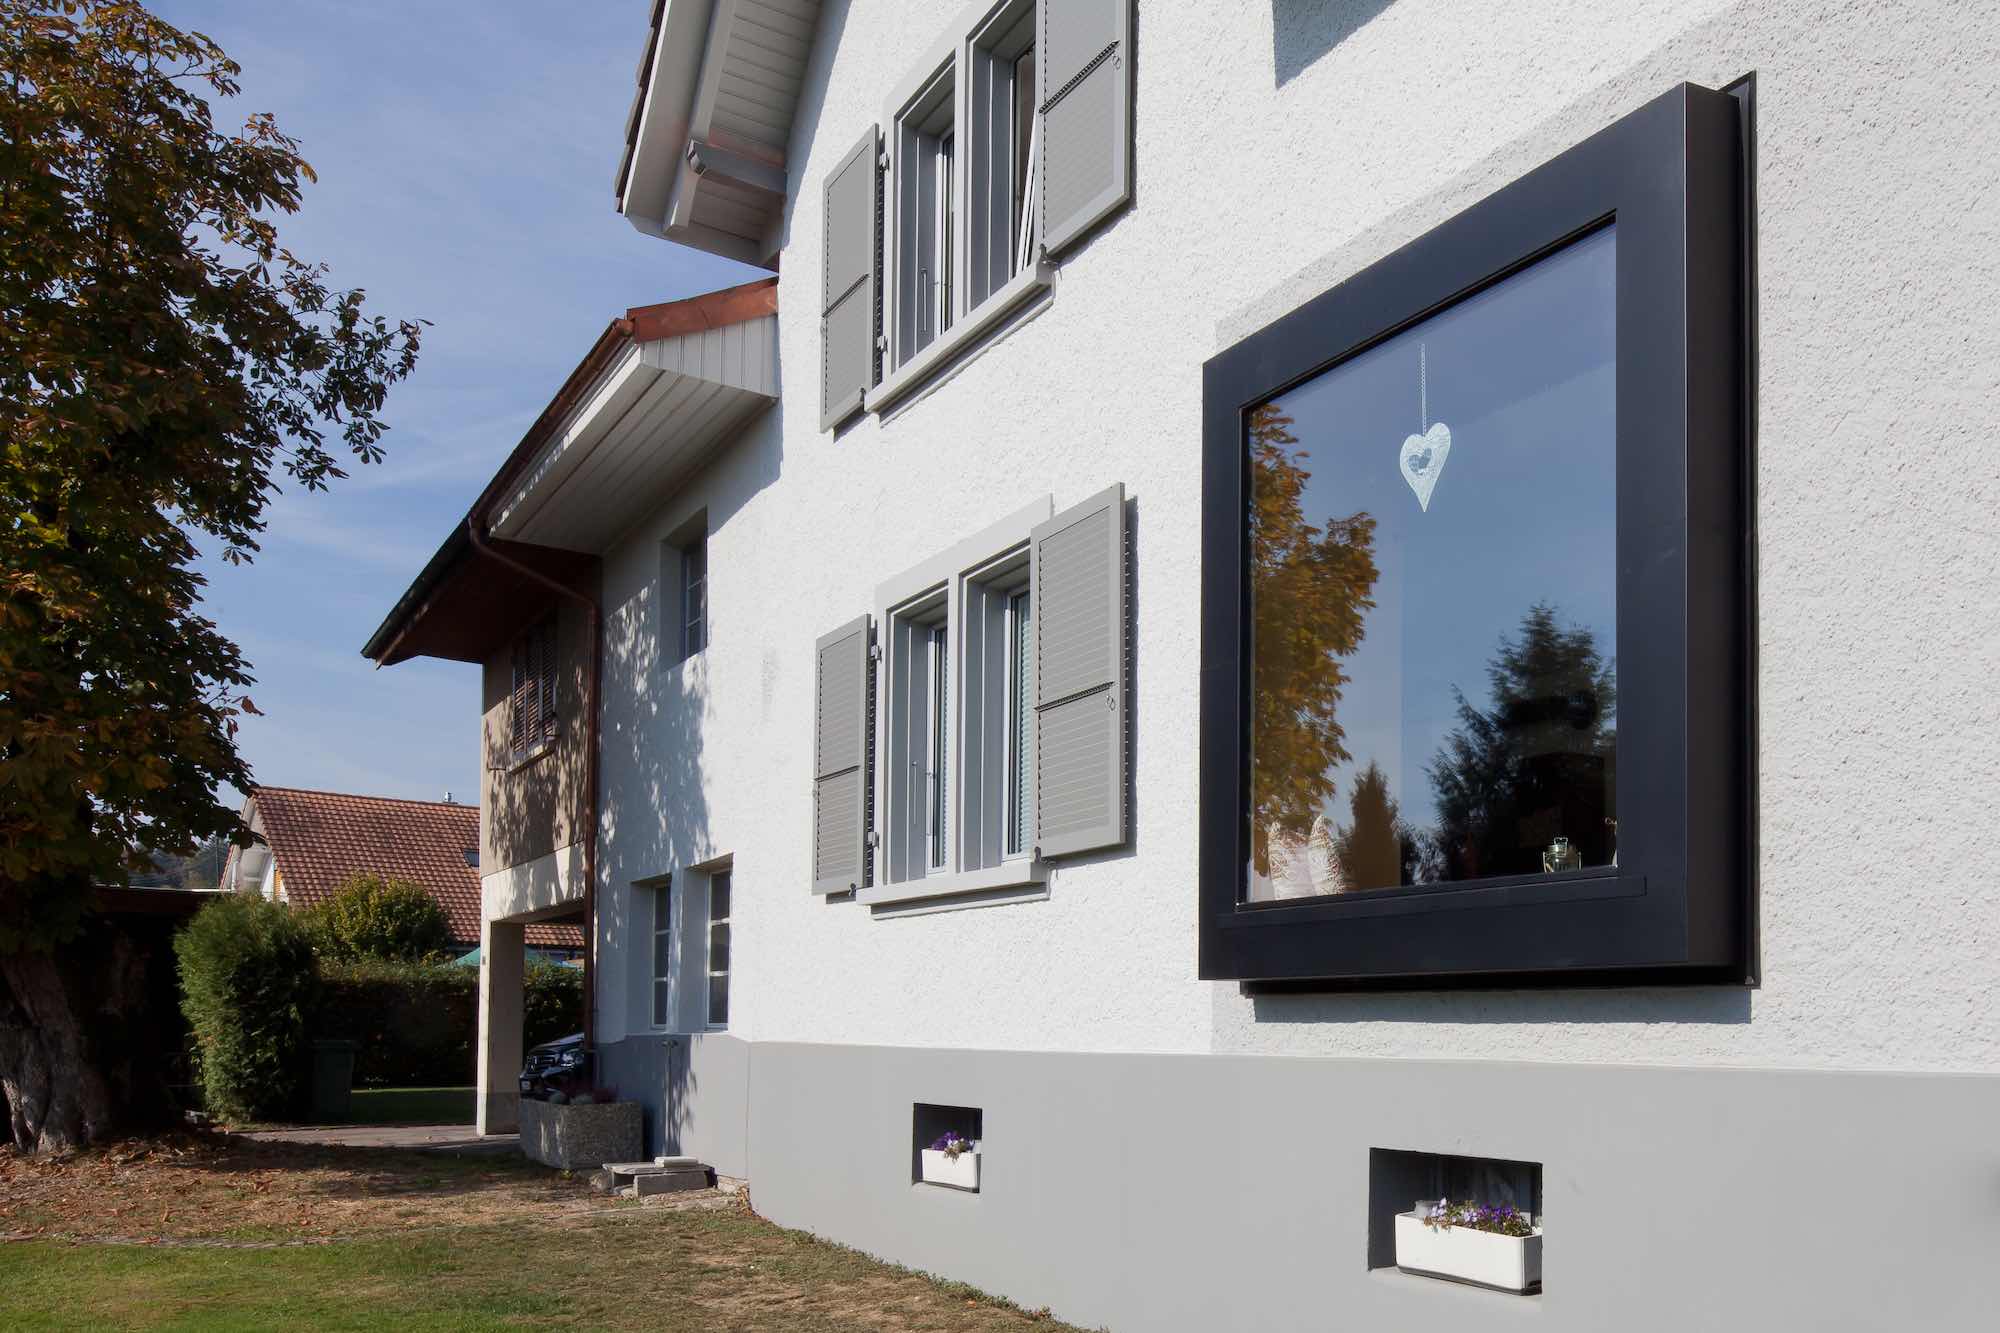 Fassadensanierung durch die Viktor Wyss AG in Flumenthal, Solothurn